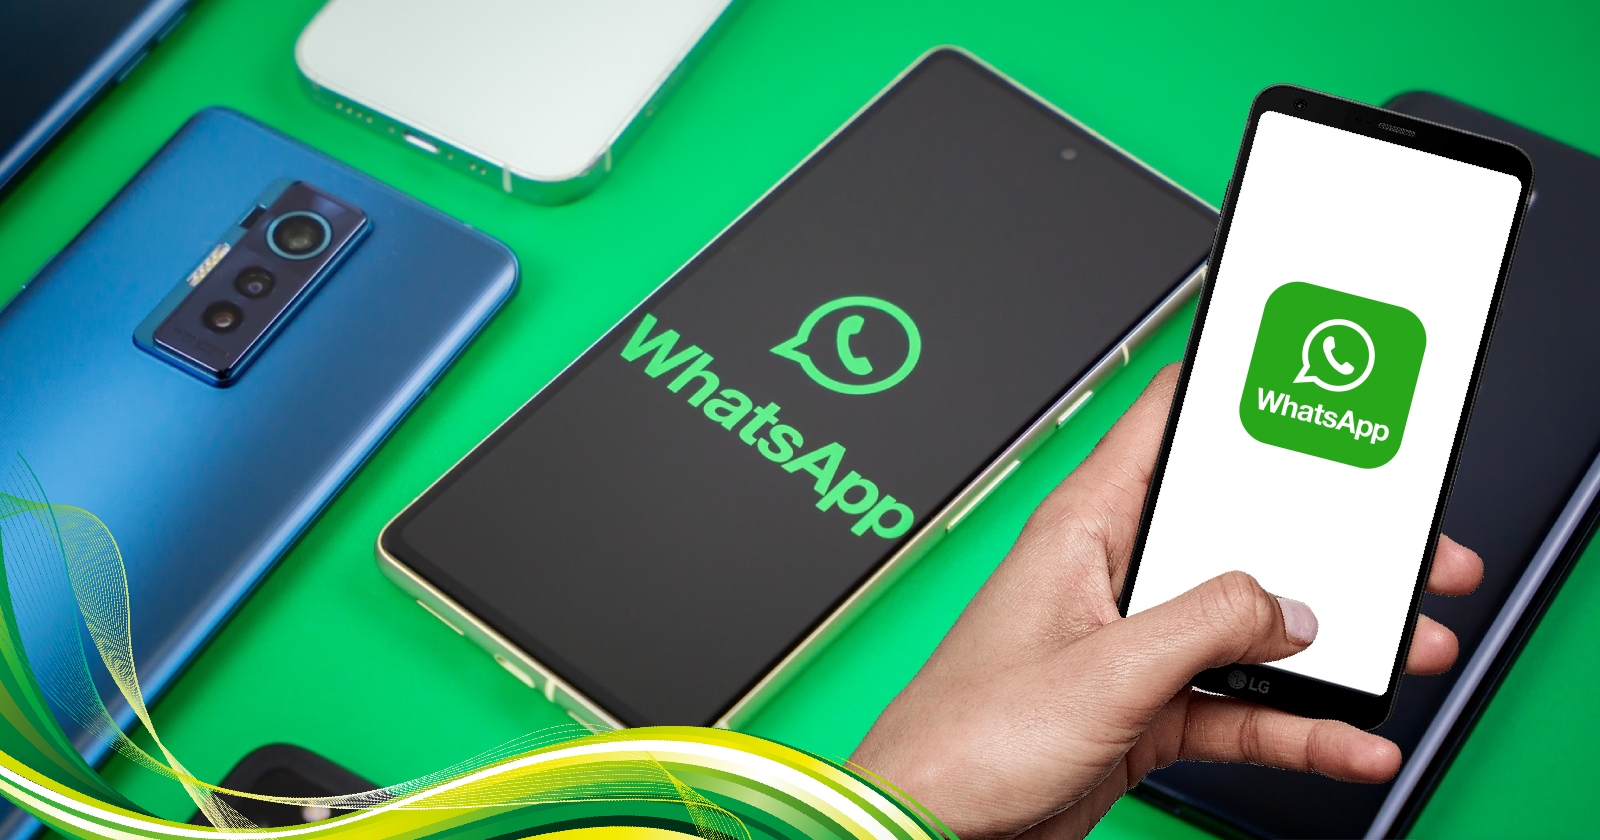 whatsapp-6-telefondan-daha-destegini-cekiyor-iste-o-cihazlar.jpg